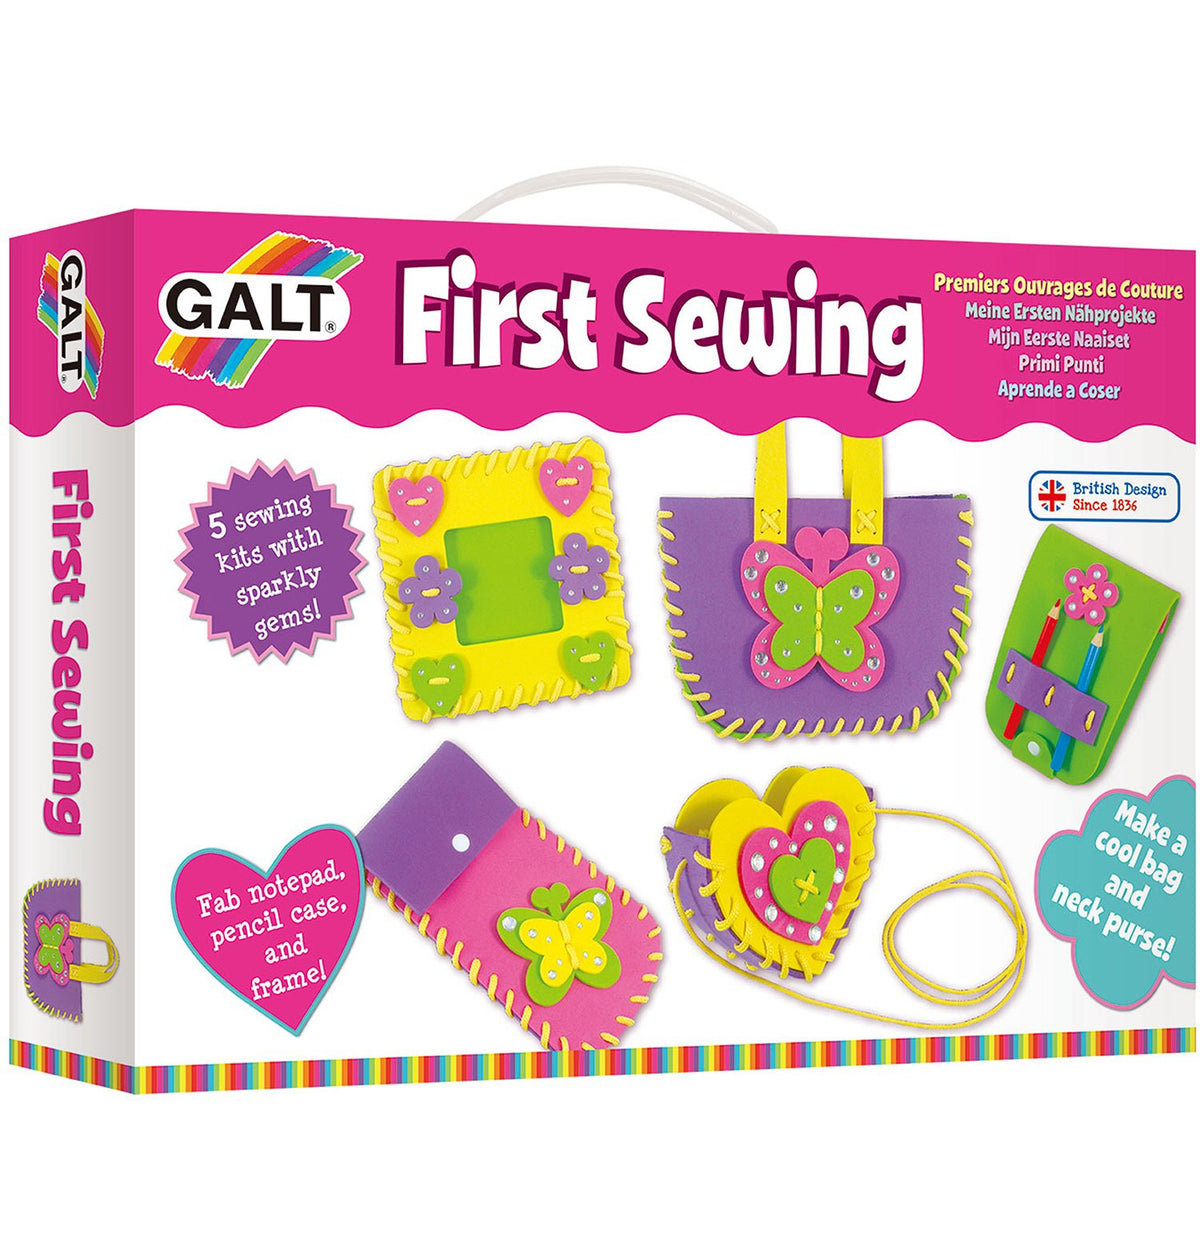 First Sewing - Galt